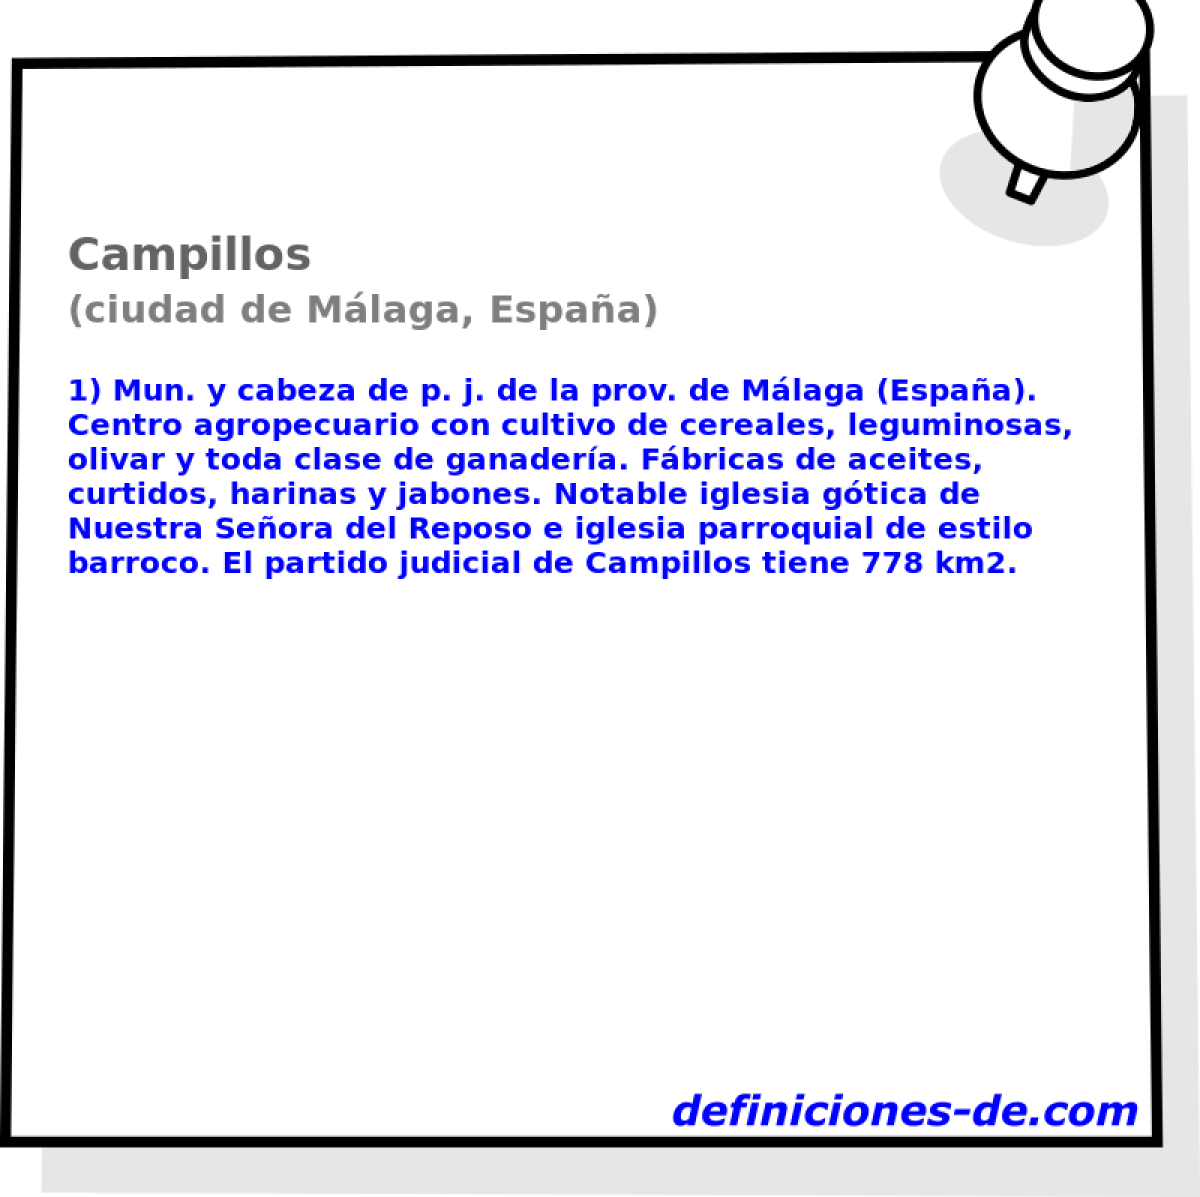 Campillos (ciudad de Mlaga, Espaa)